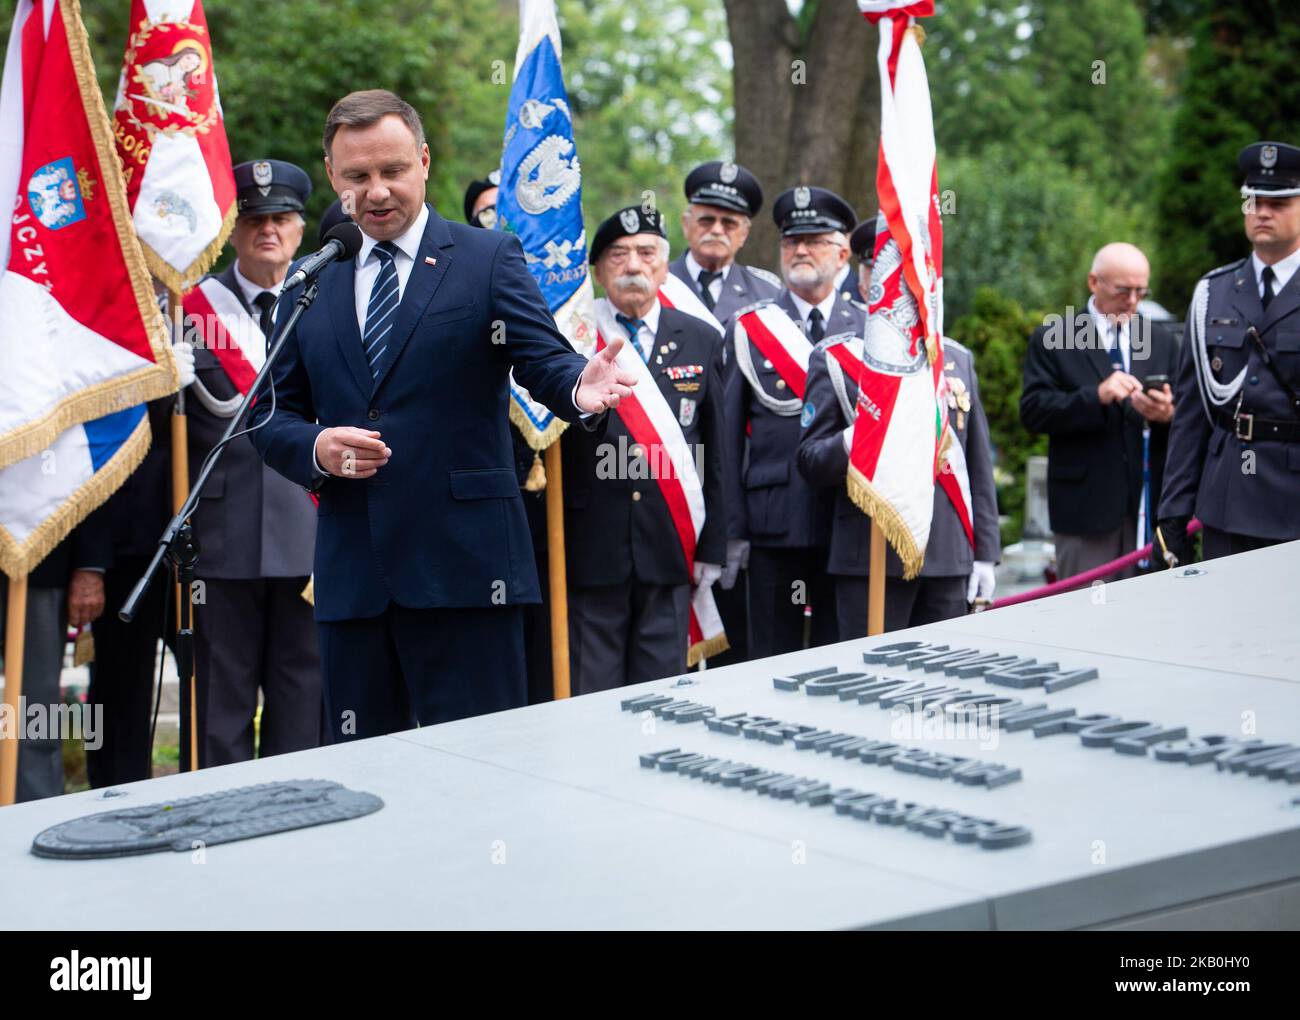 Le Président polonais Andrzej Duda lors de la cérémonie de dévoilement du monument « gloire aux pilotes polonais » lors de la Journée de l'aviation polonaise au cimetière militaire de Powazki à Varsovie, en Pologne, le 28 août 2018 (photo de Mateusz Wlodarczyk/NurPhoto) Banque D'Images